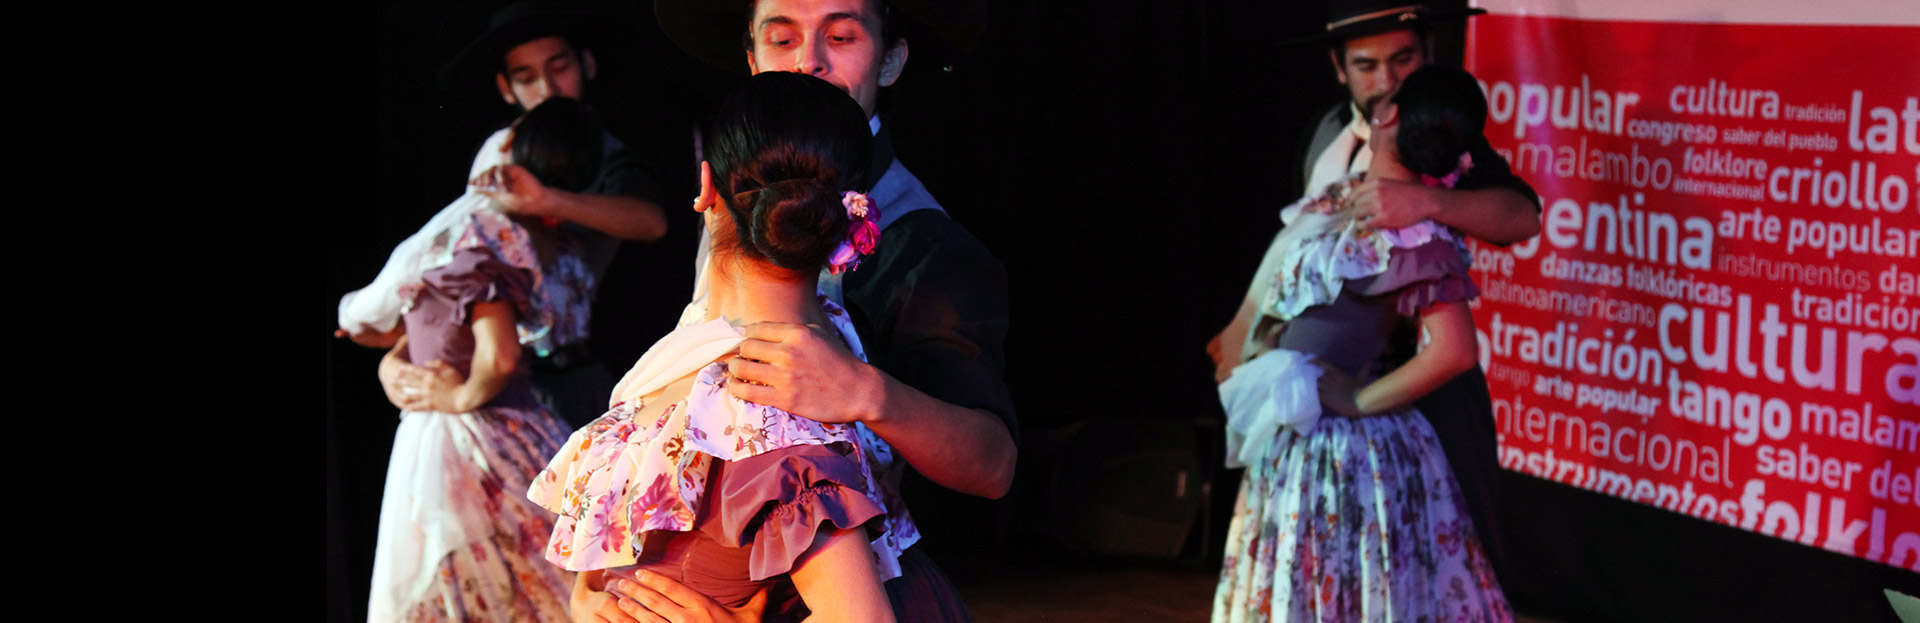 Congreso Latinoamericano de Folklore y Congreso Universitario Internacional de Tango Argentino